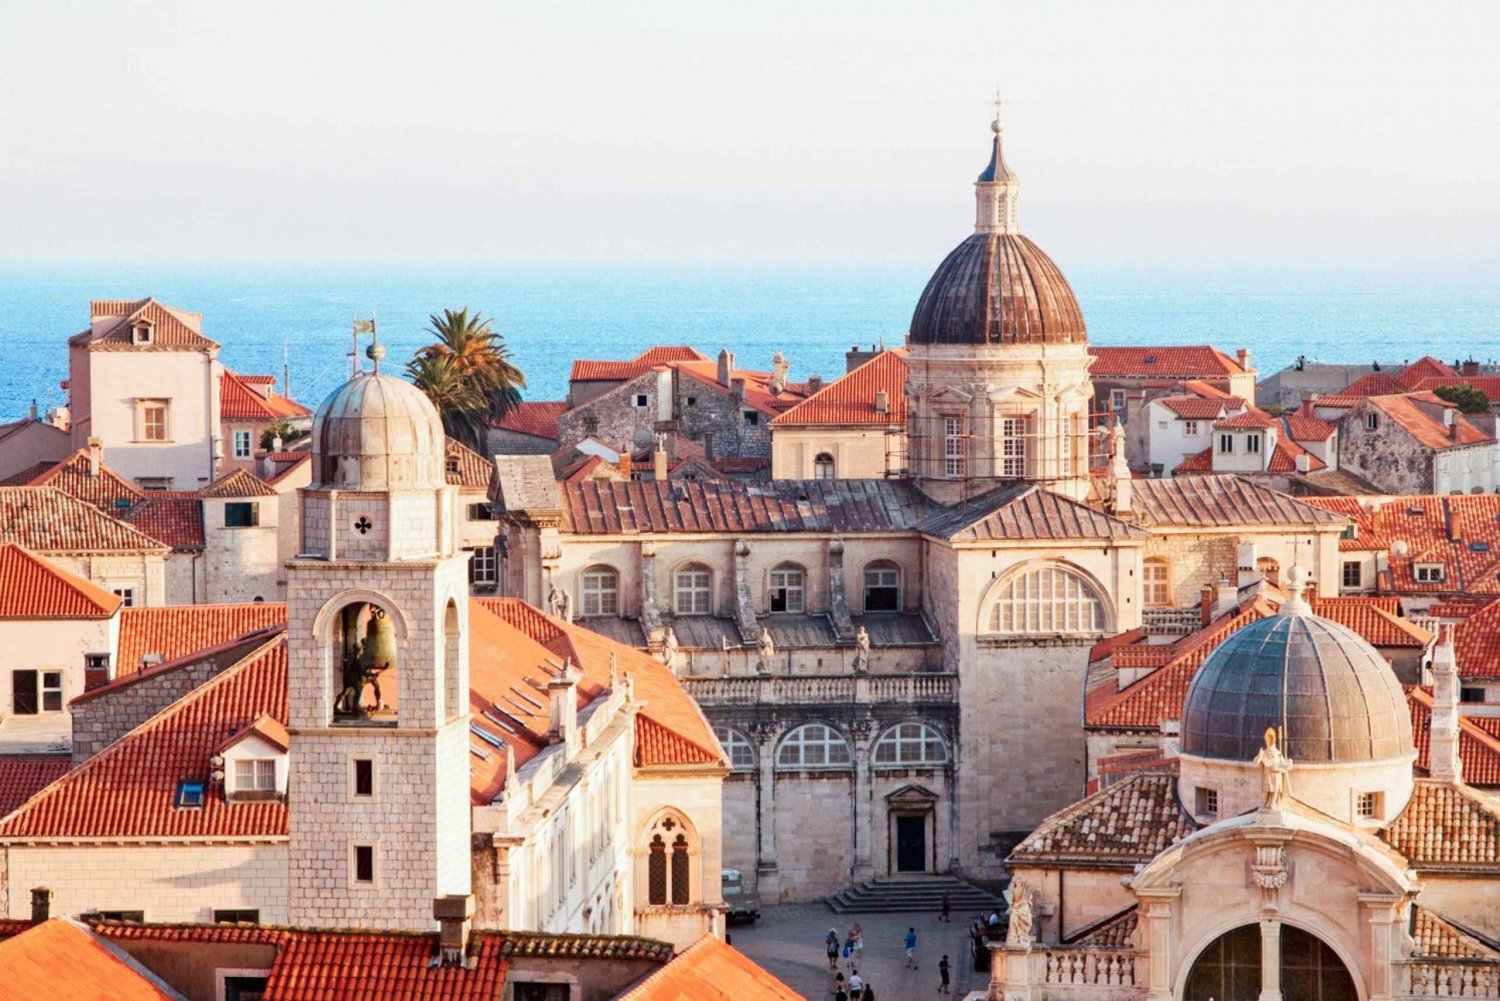 Dubrovnik: Old Town Walking Tour